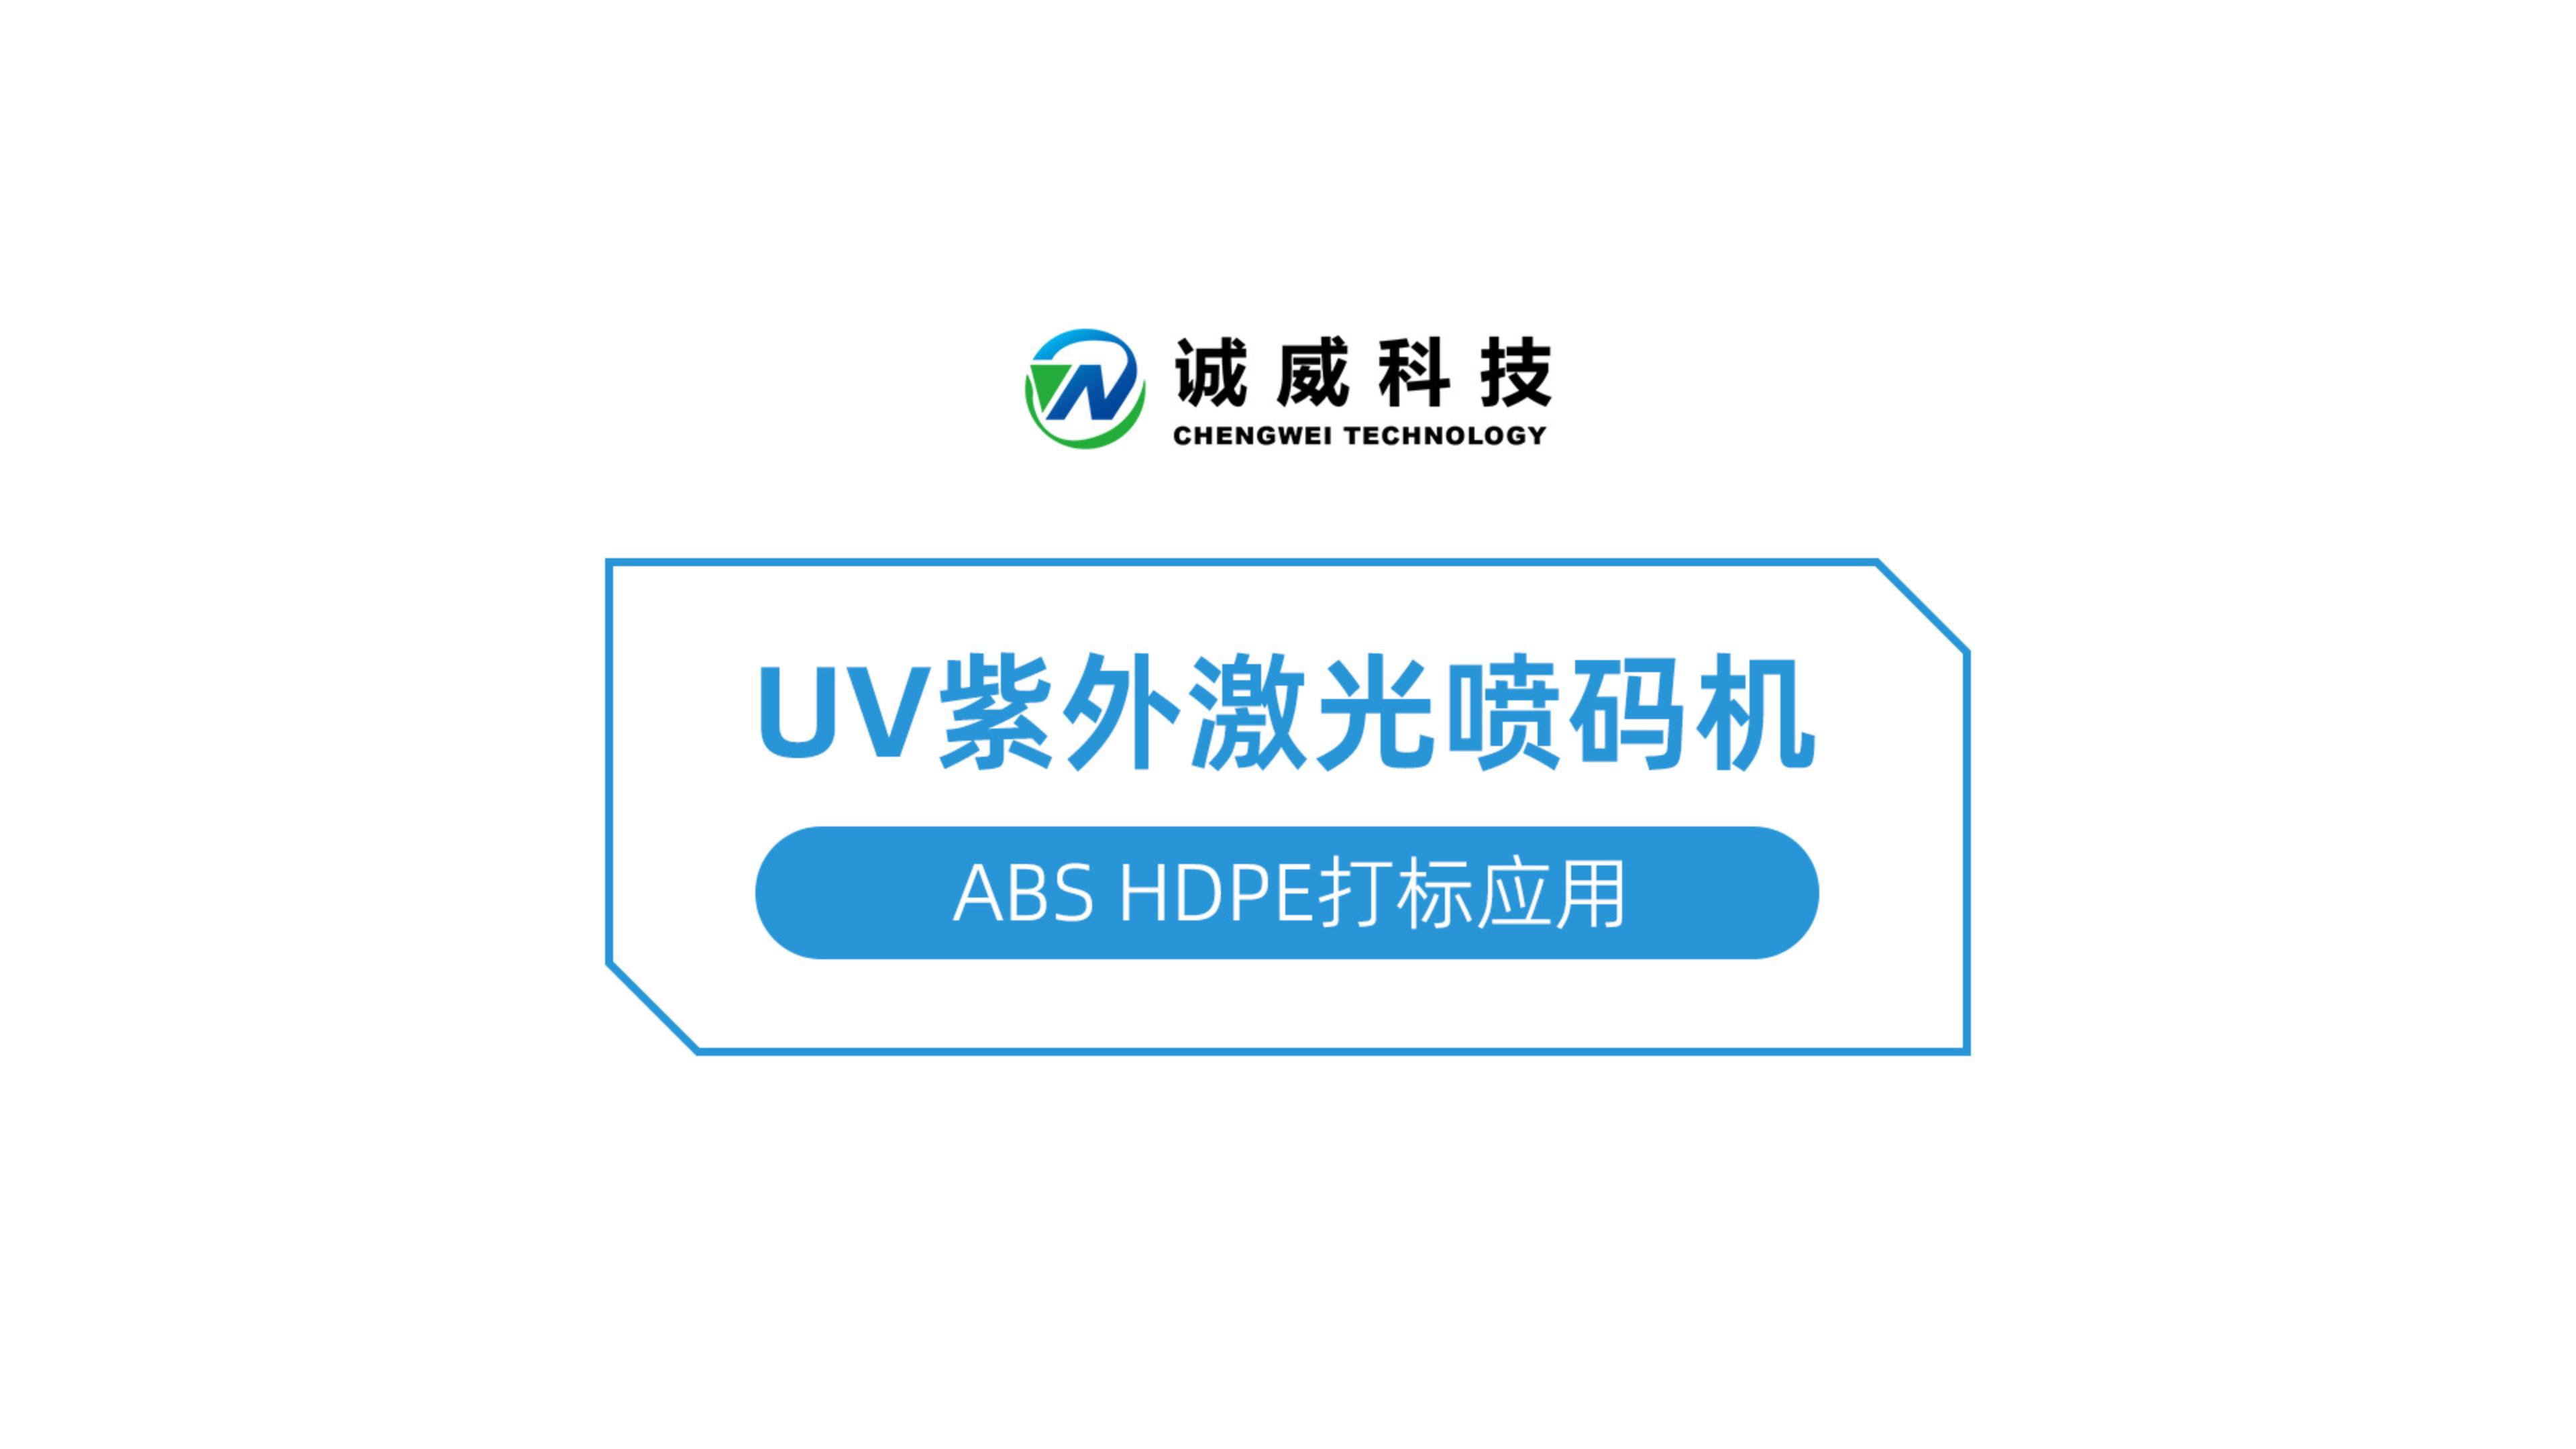 UV紫外激光喷码机-ABS HDPE打标应用-封面.jpg